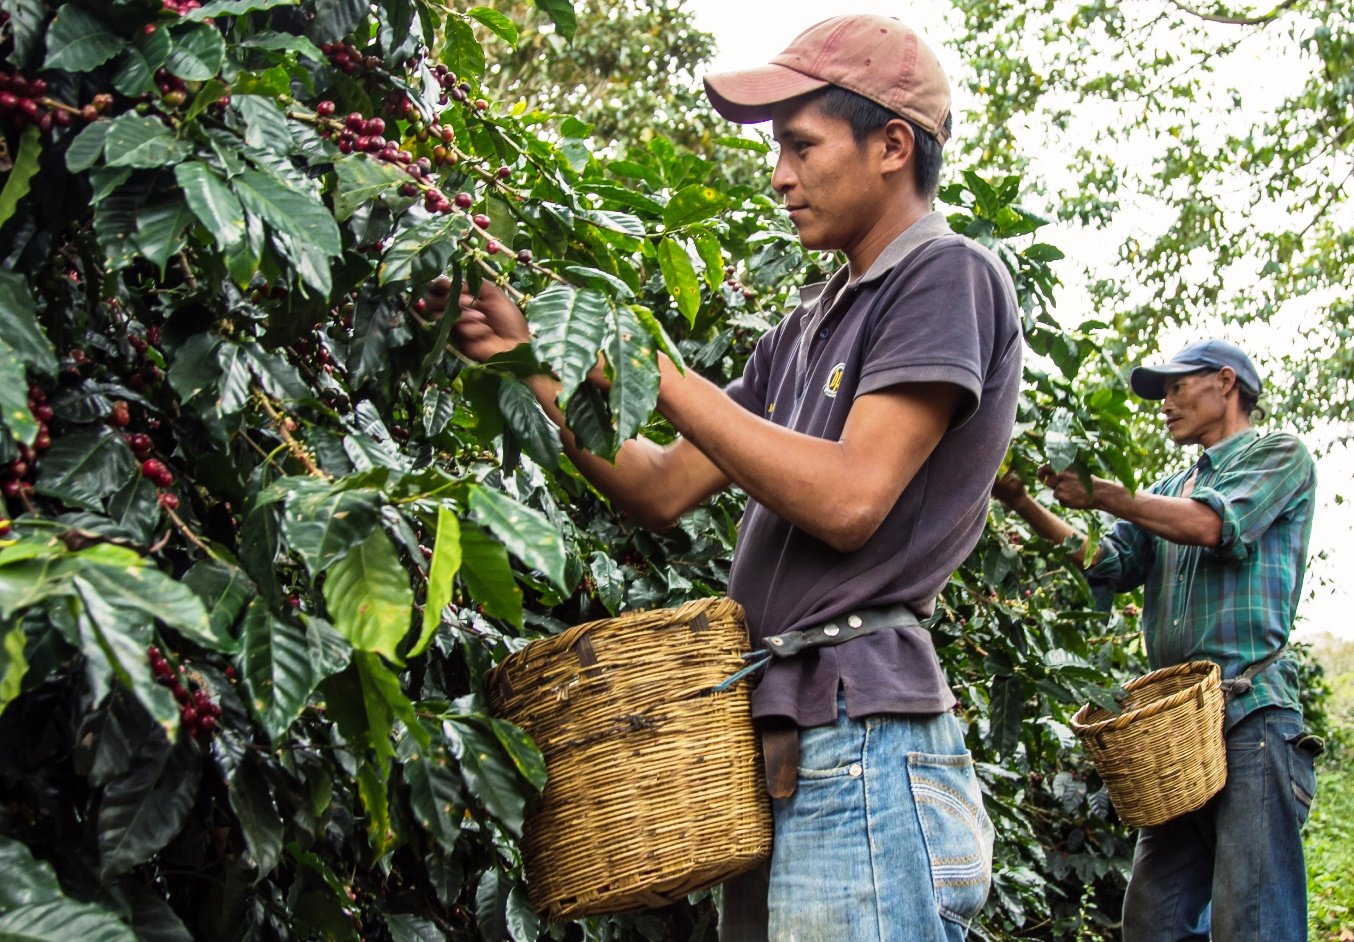 Coffee Cherry picking in Honduras